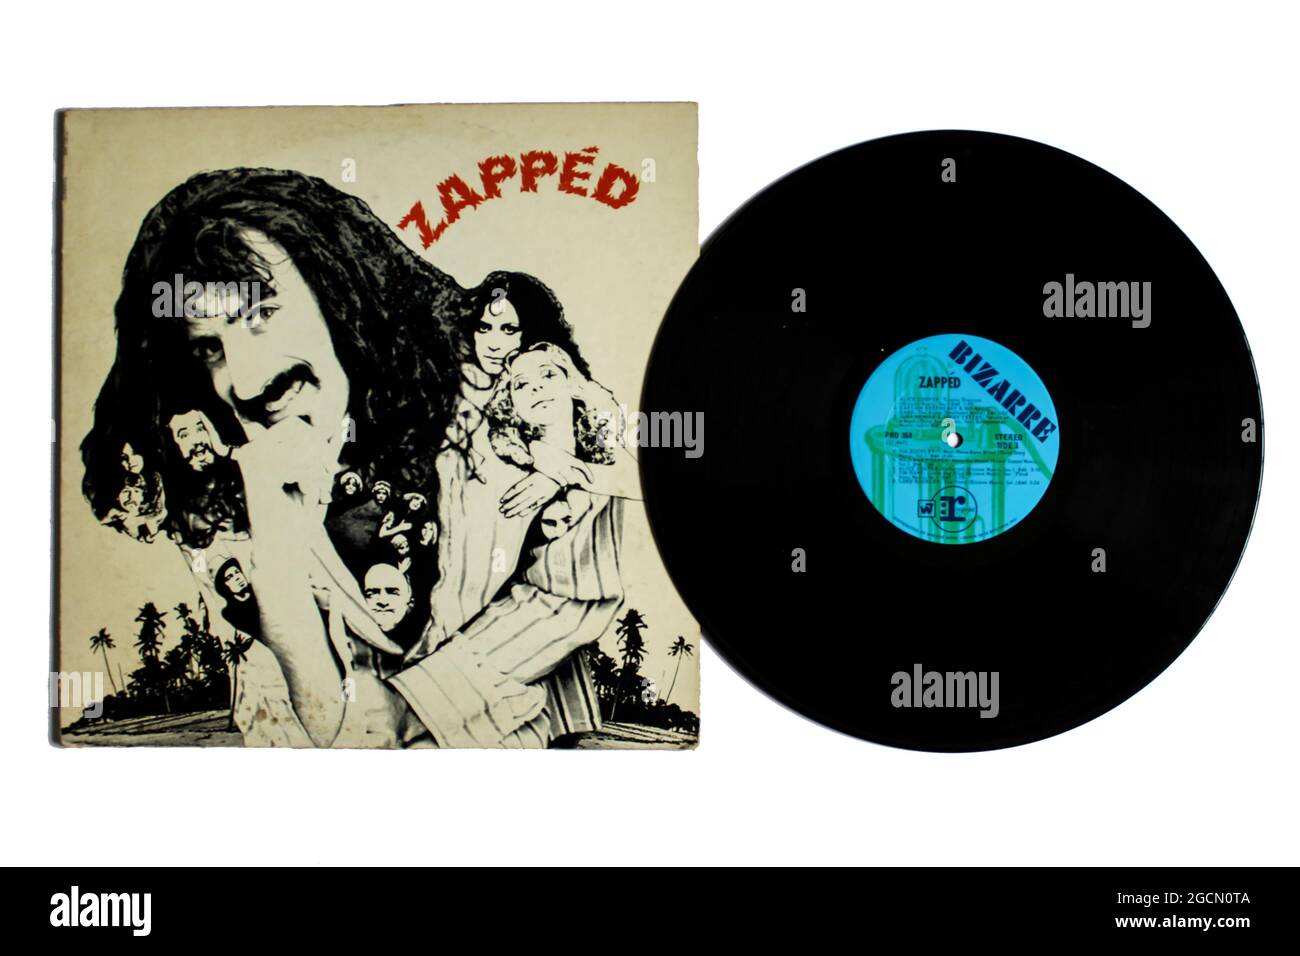 Album di compilation conosciuto come la serie 'Loss leader' PRO, con Frank Zappa e altri artisti sulla copertina dell'album dal titolo Zappéd. Disco LP con registrazione in vinile. Foto Stock